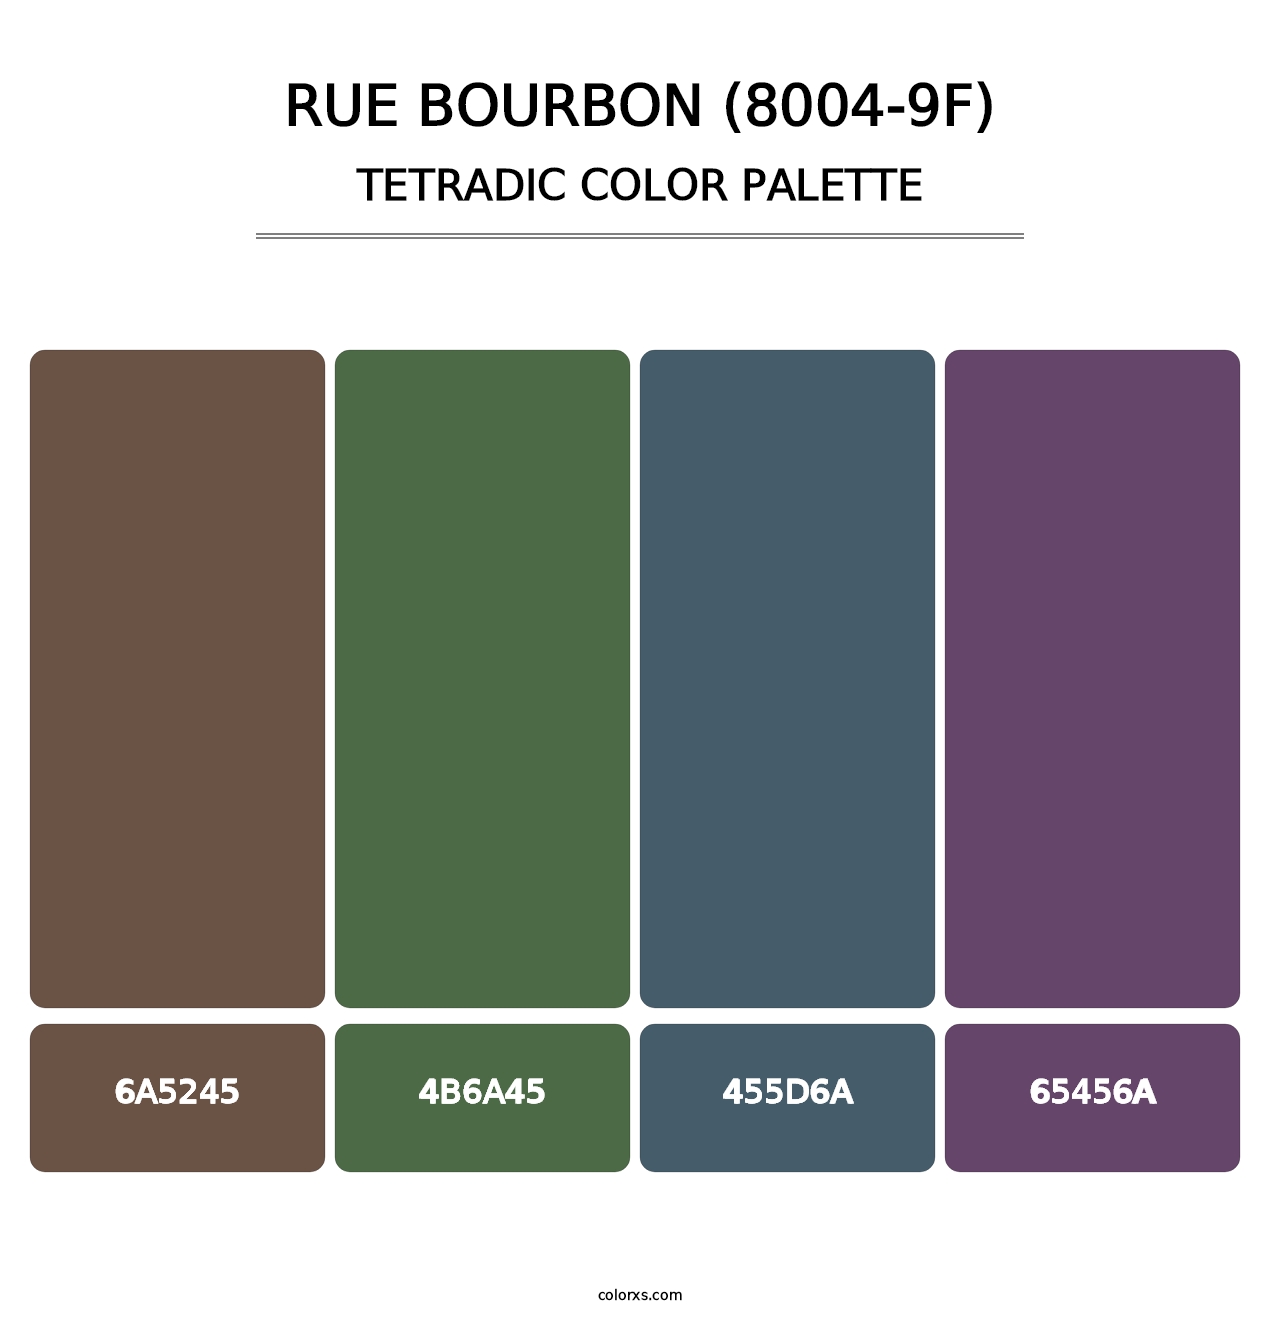 Rue Bourbon (8004-9F) - Tetradic Color Palette